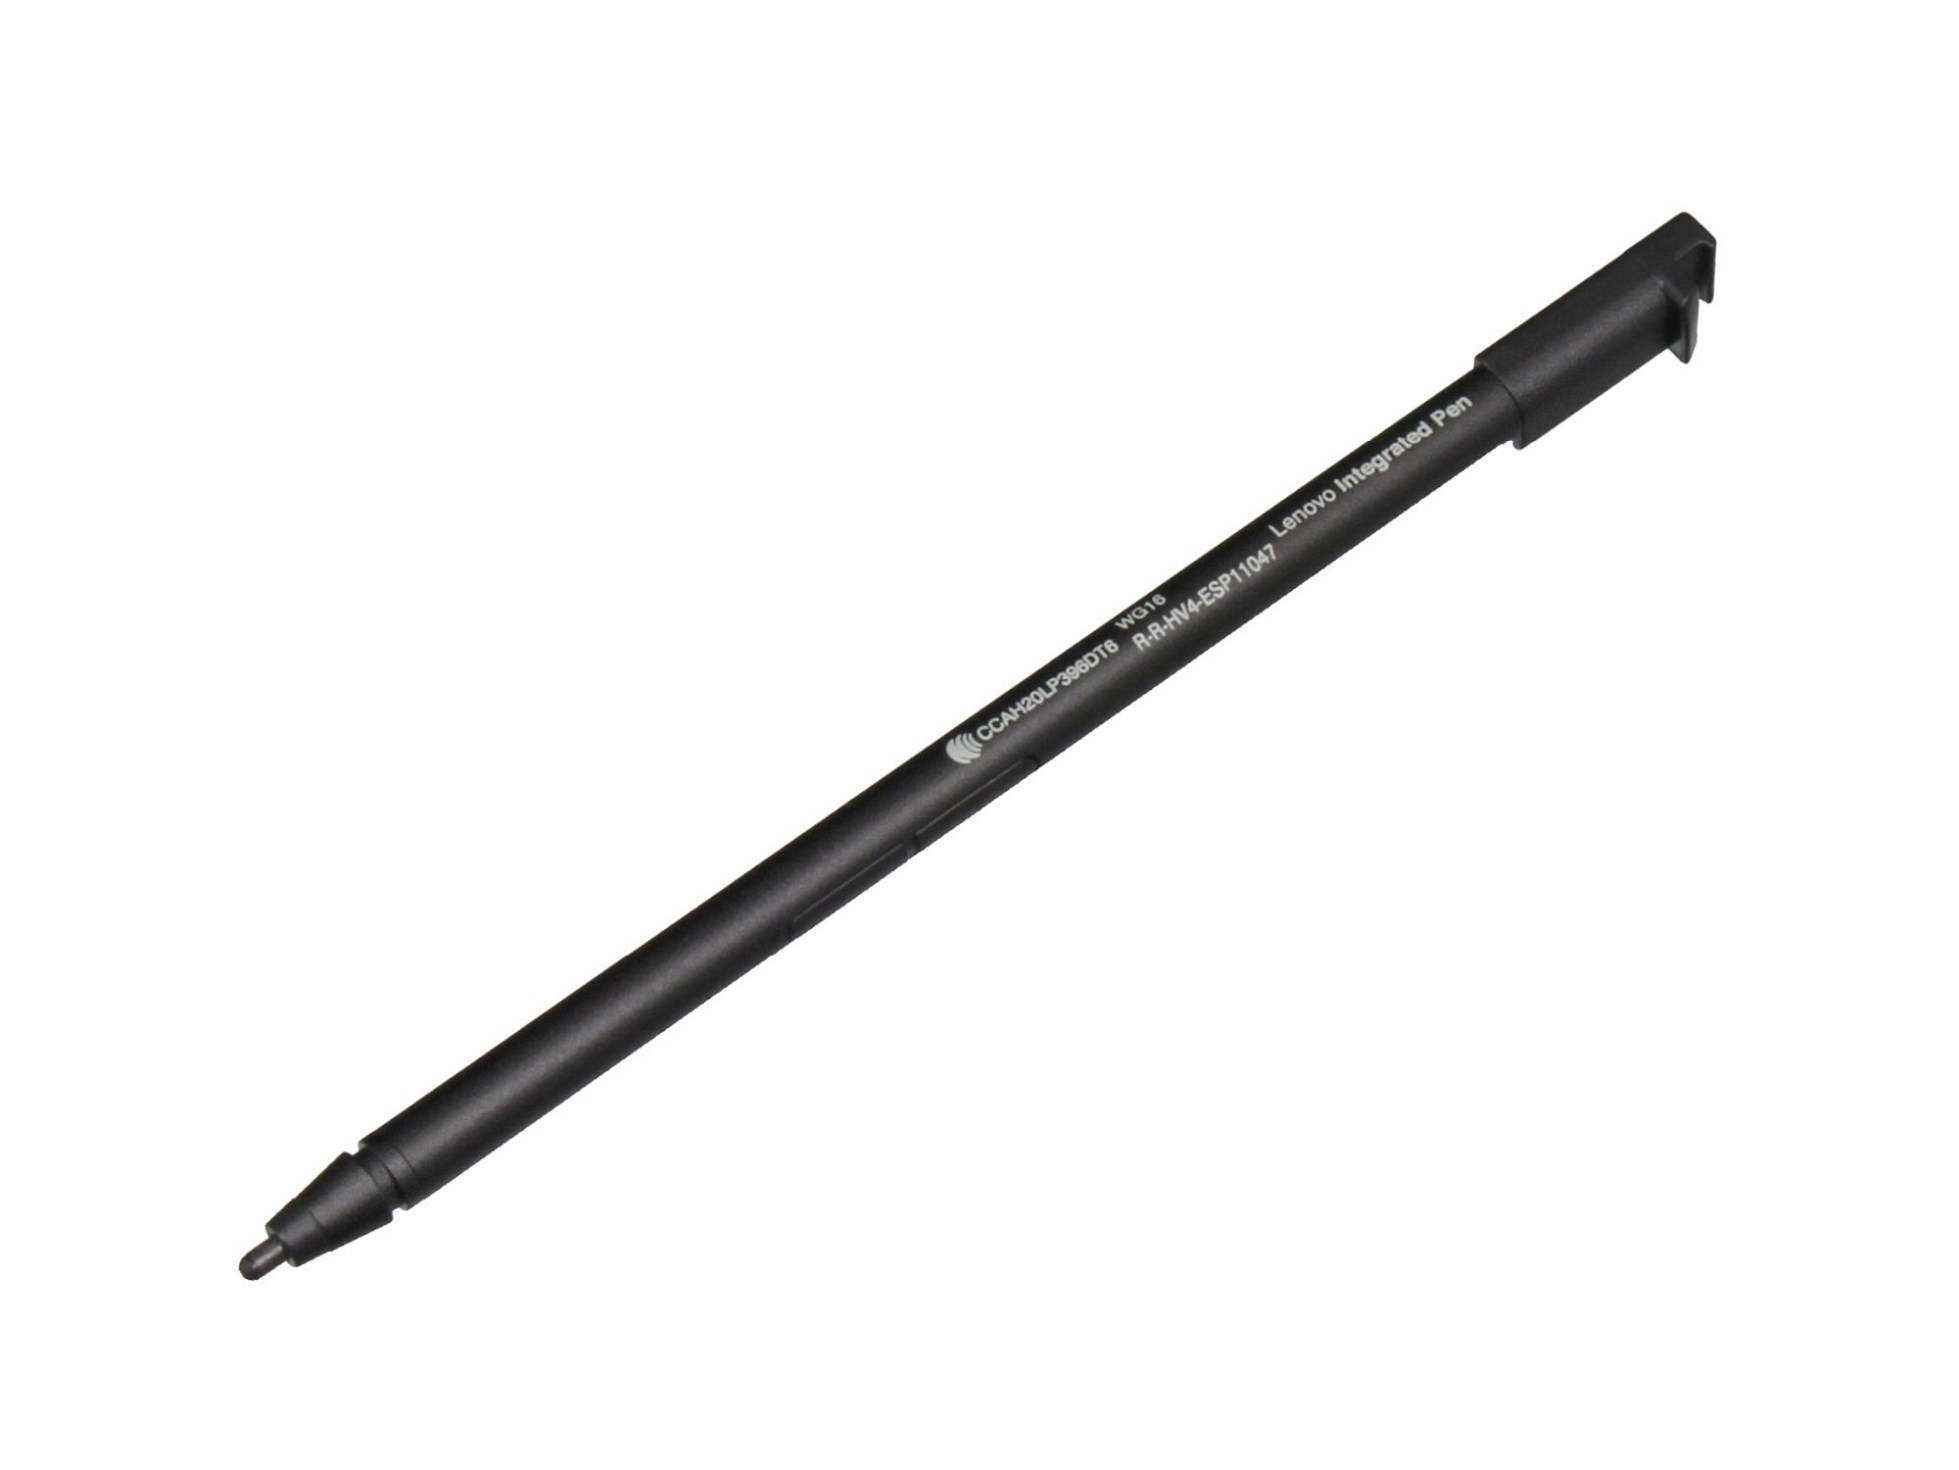 Lenovo WG16 Stylus Pen